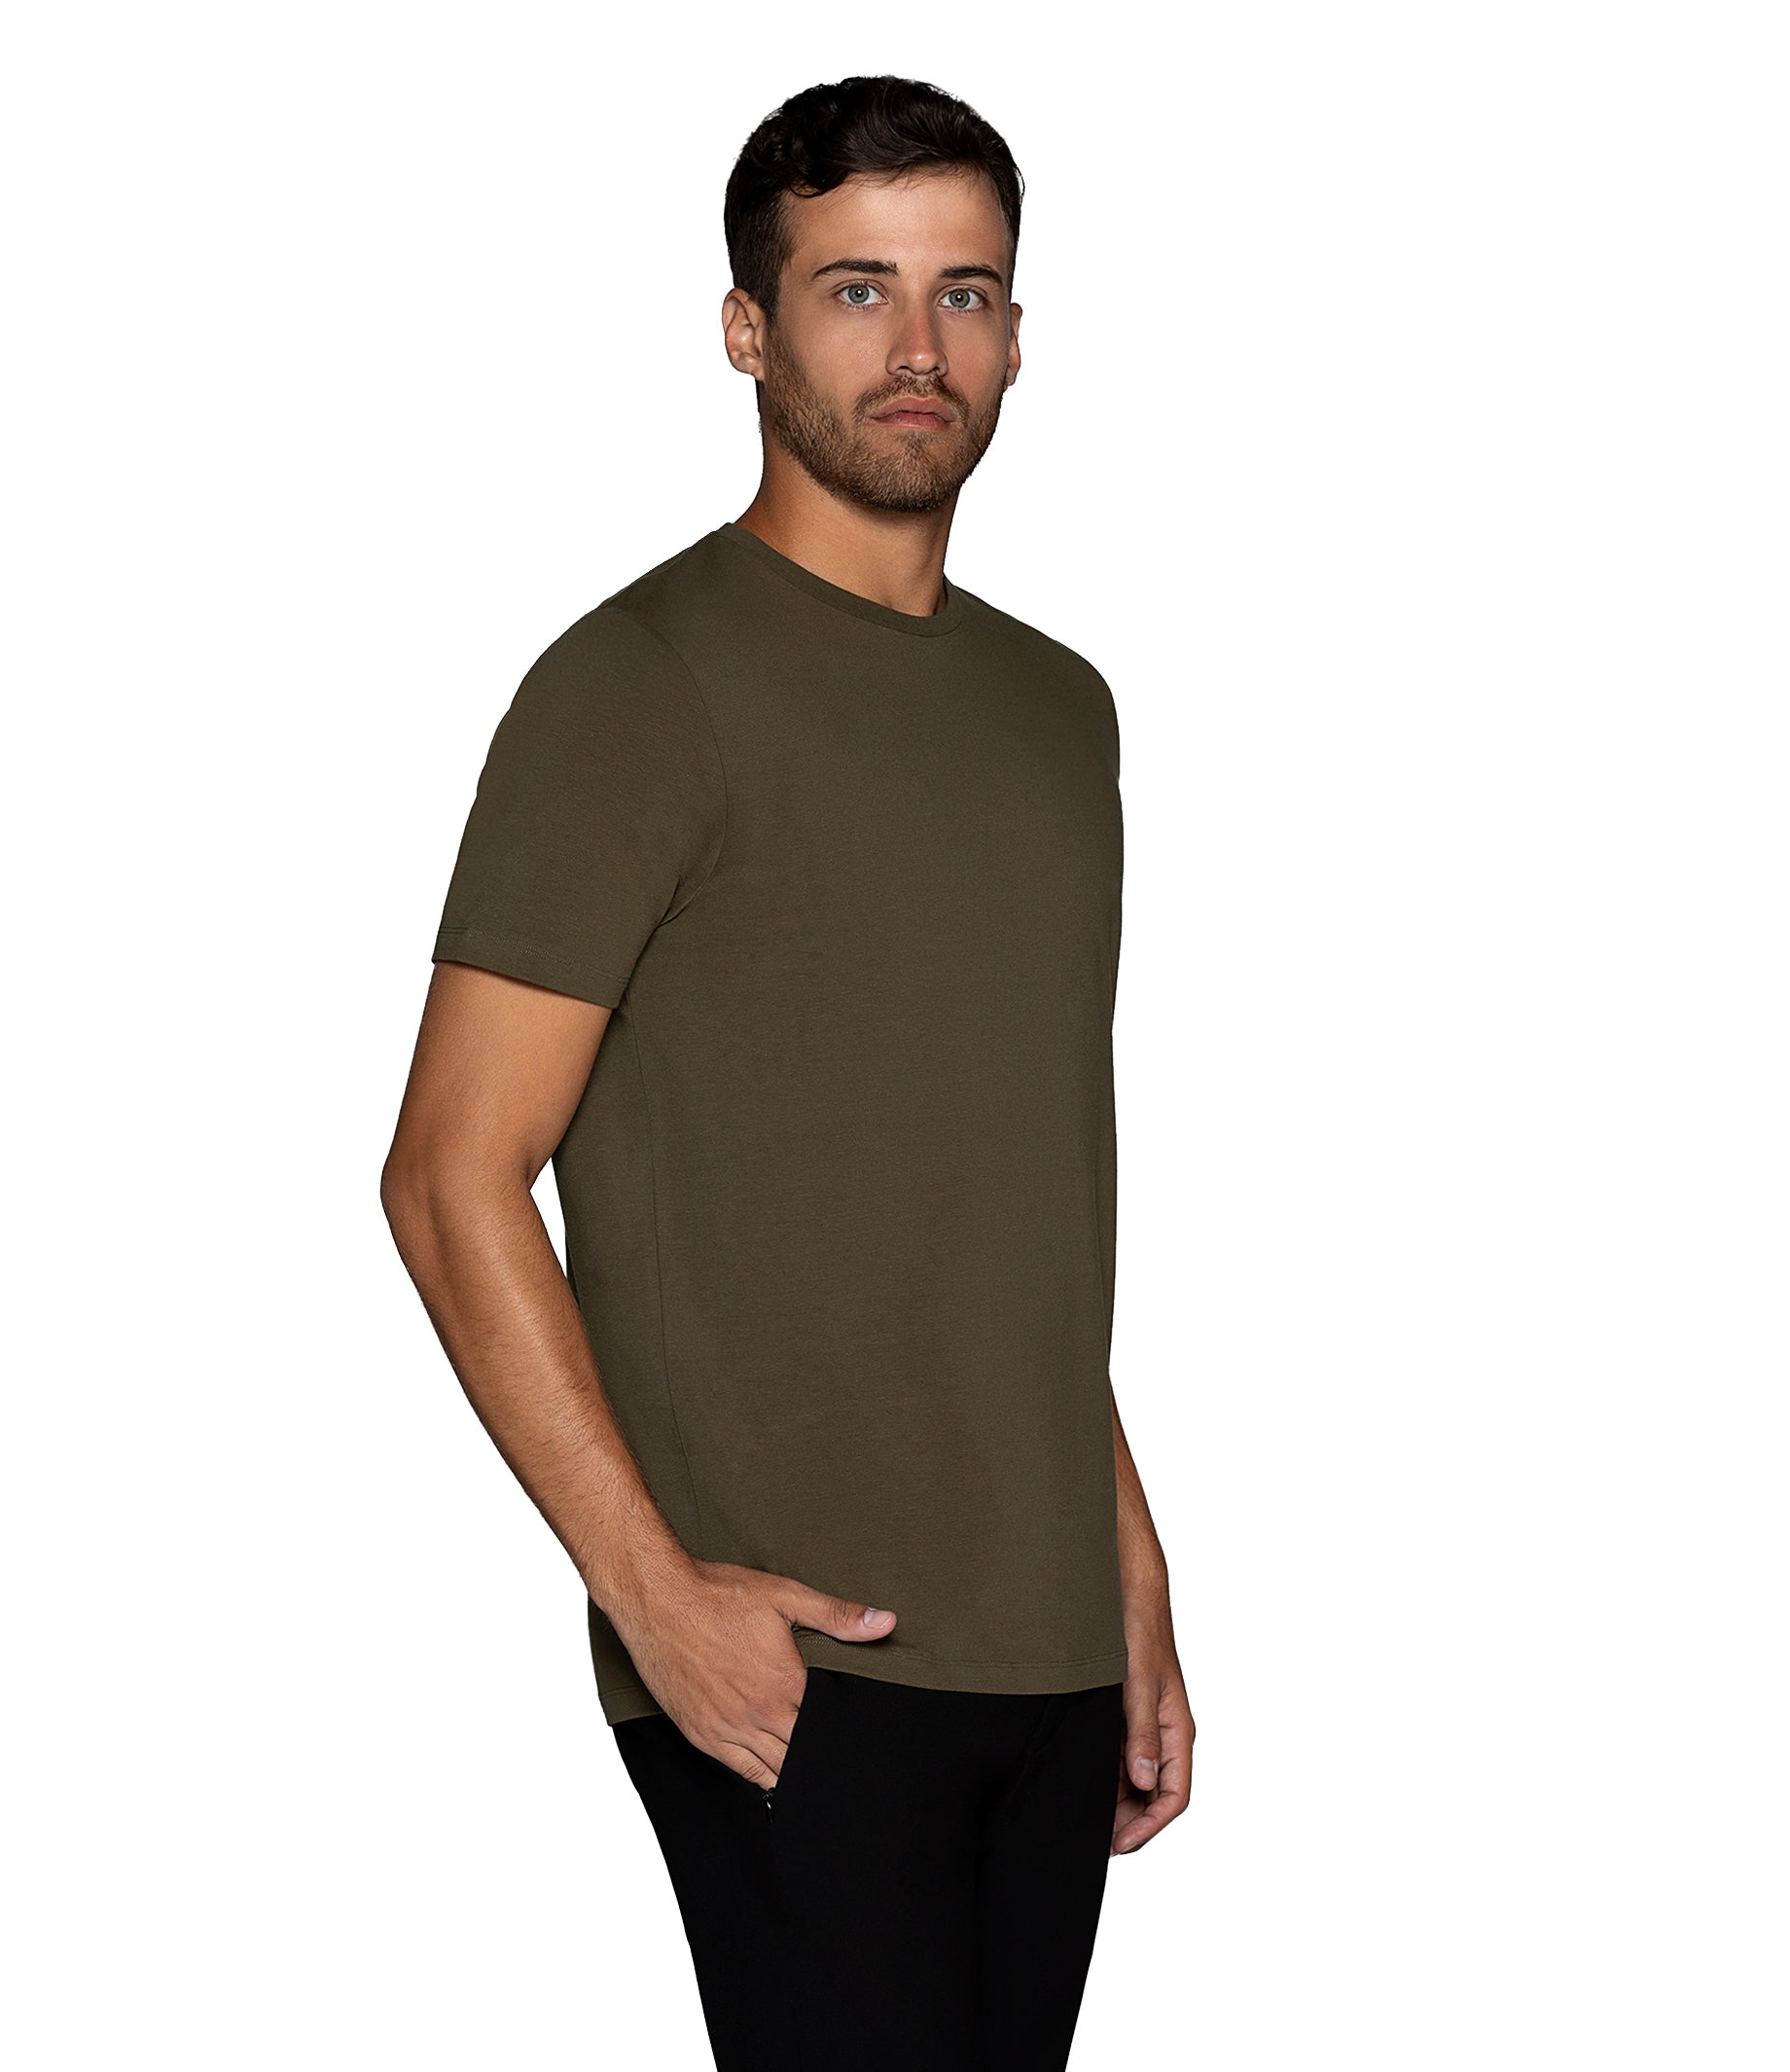 Bertigo Florance Shirt Men T – Shop Olive Solid for Bertigo